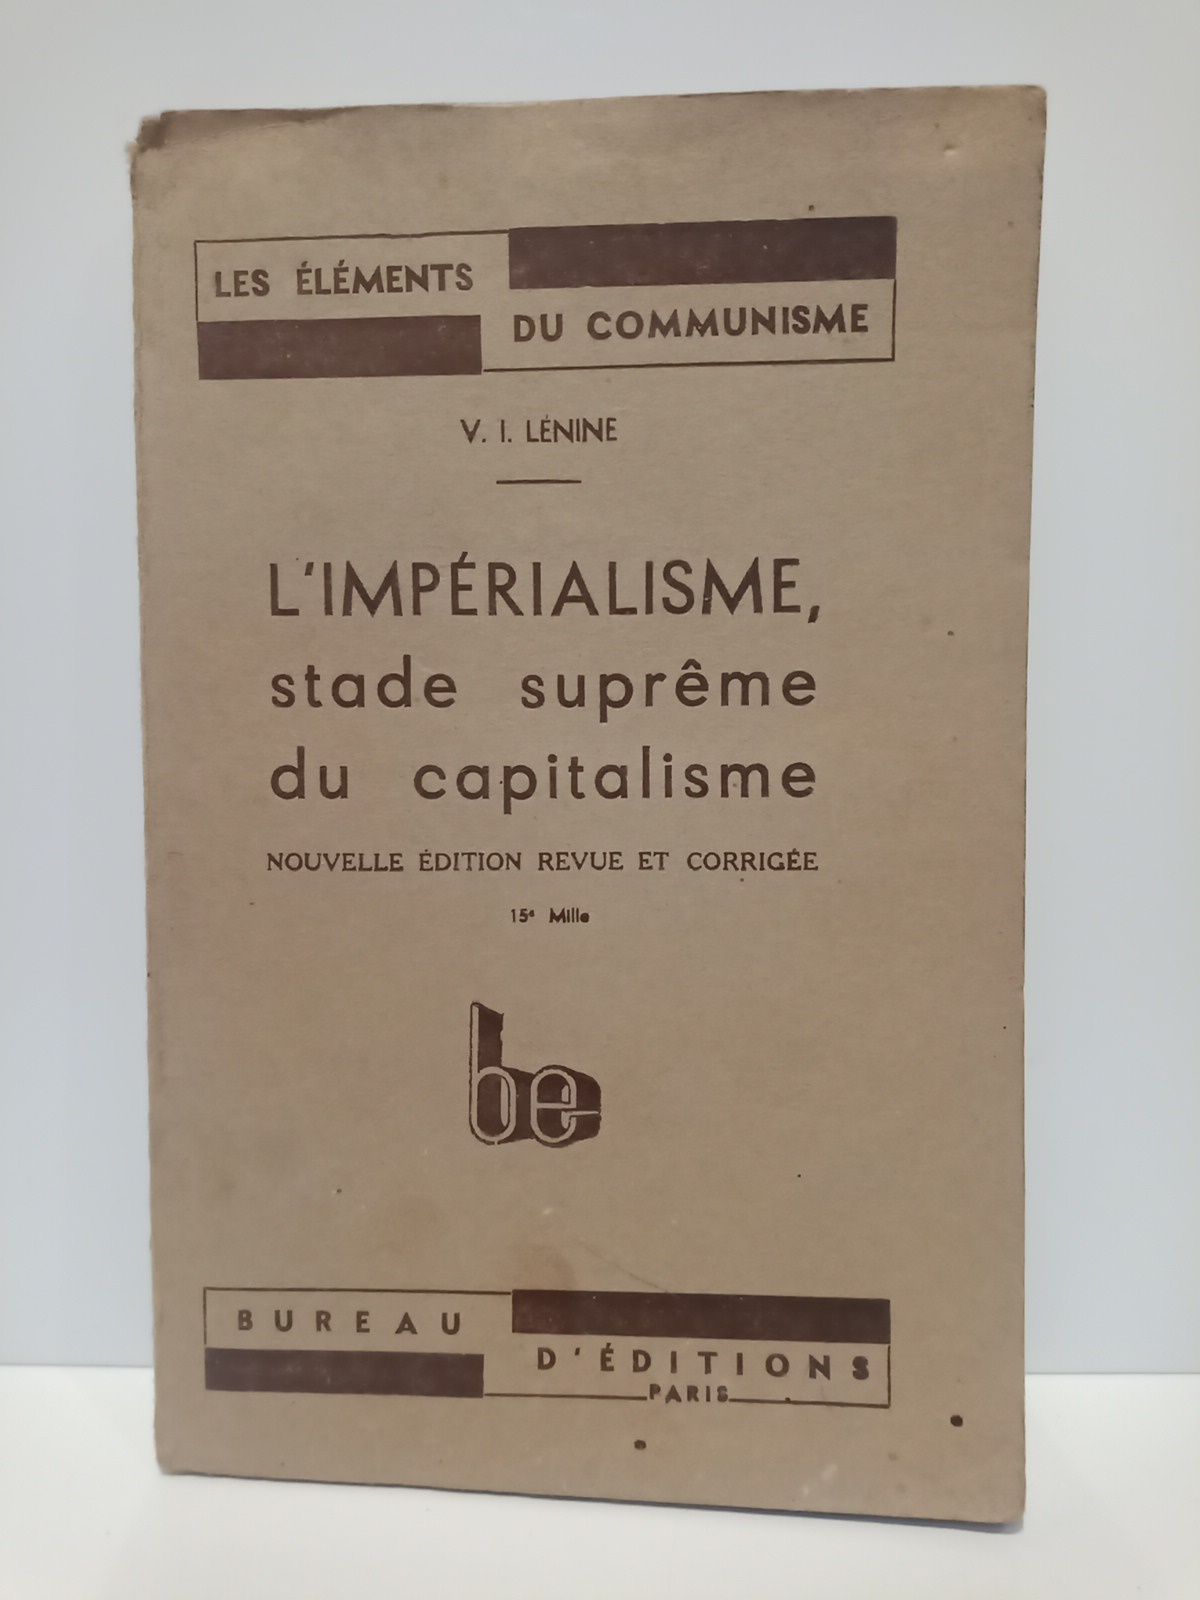 LENINE, V. I. - L'Imperialisme, stade suprme du capitalisme. Nouvelle dition revue et corrige